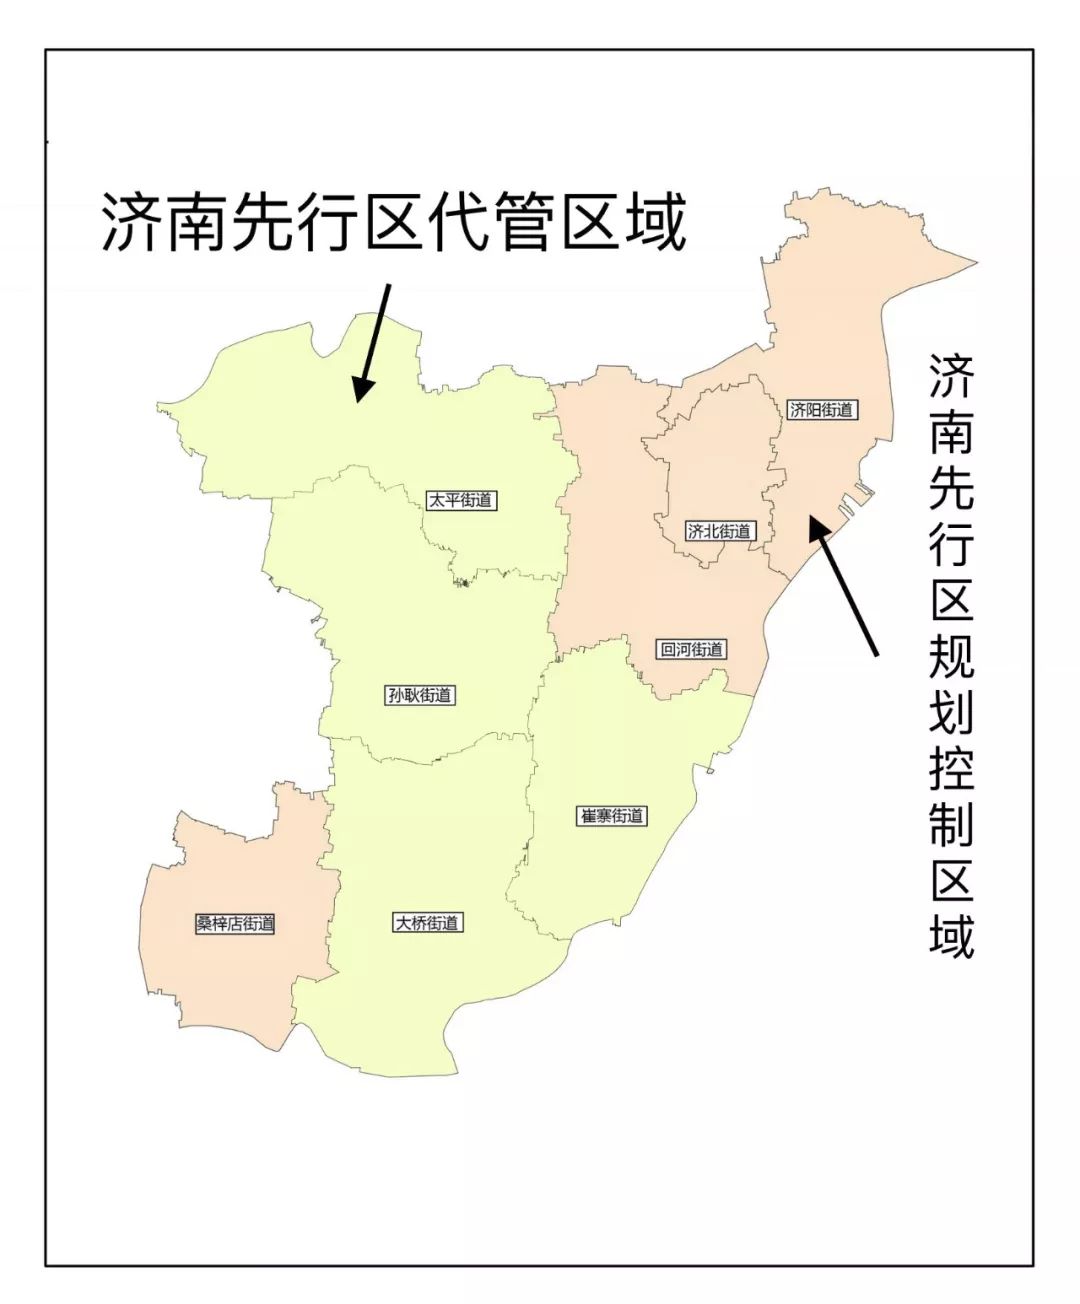 济南高新区行政区划图片